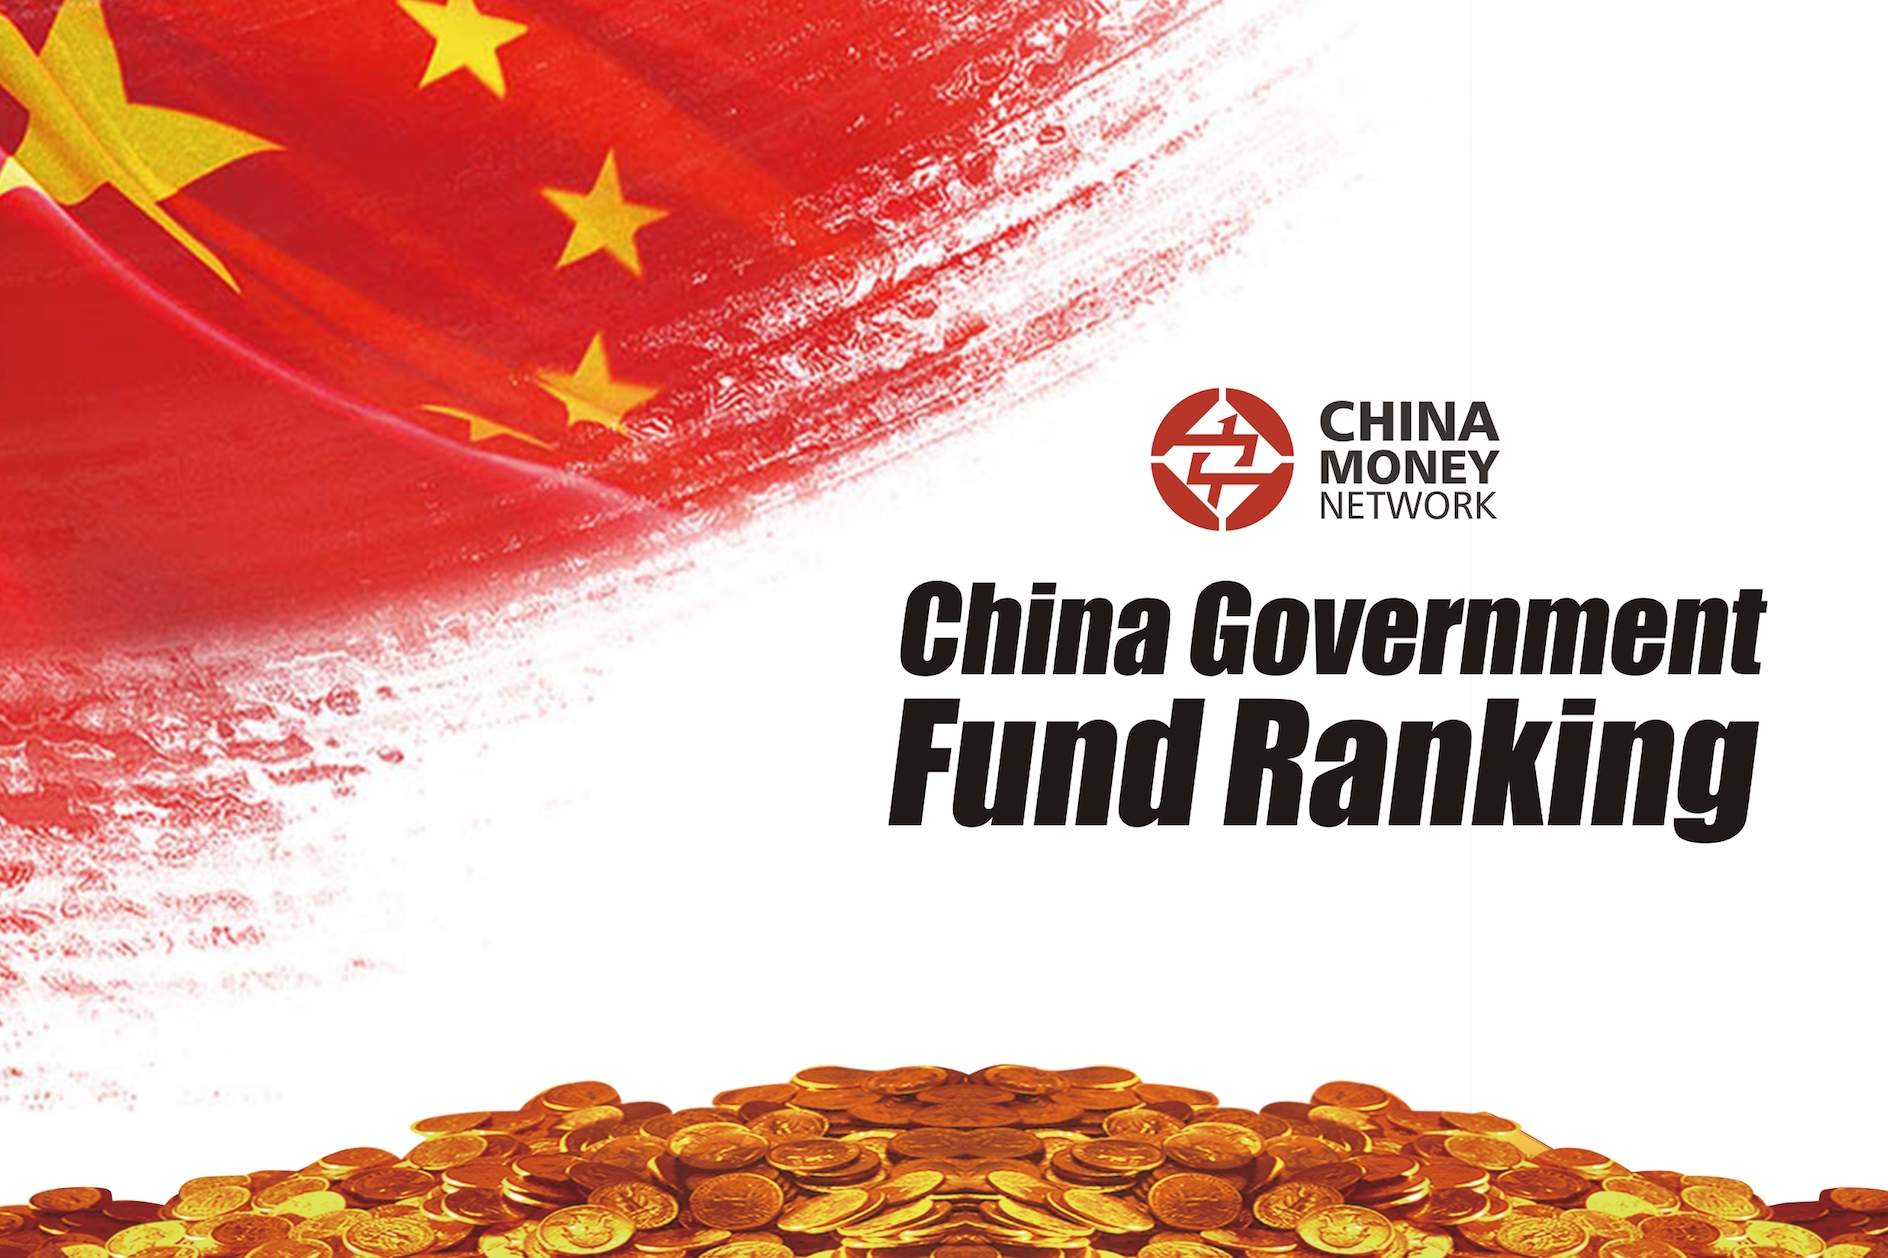 China Government Fund Ranking China Money Network